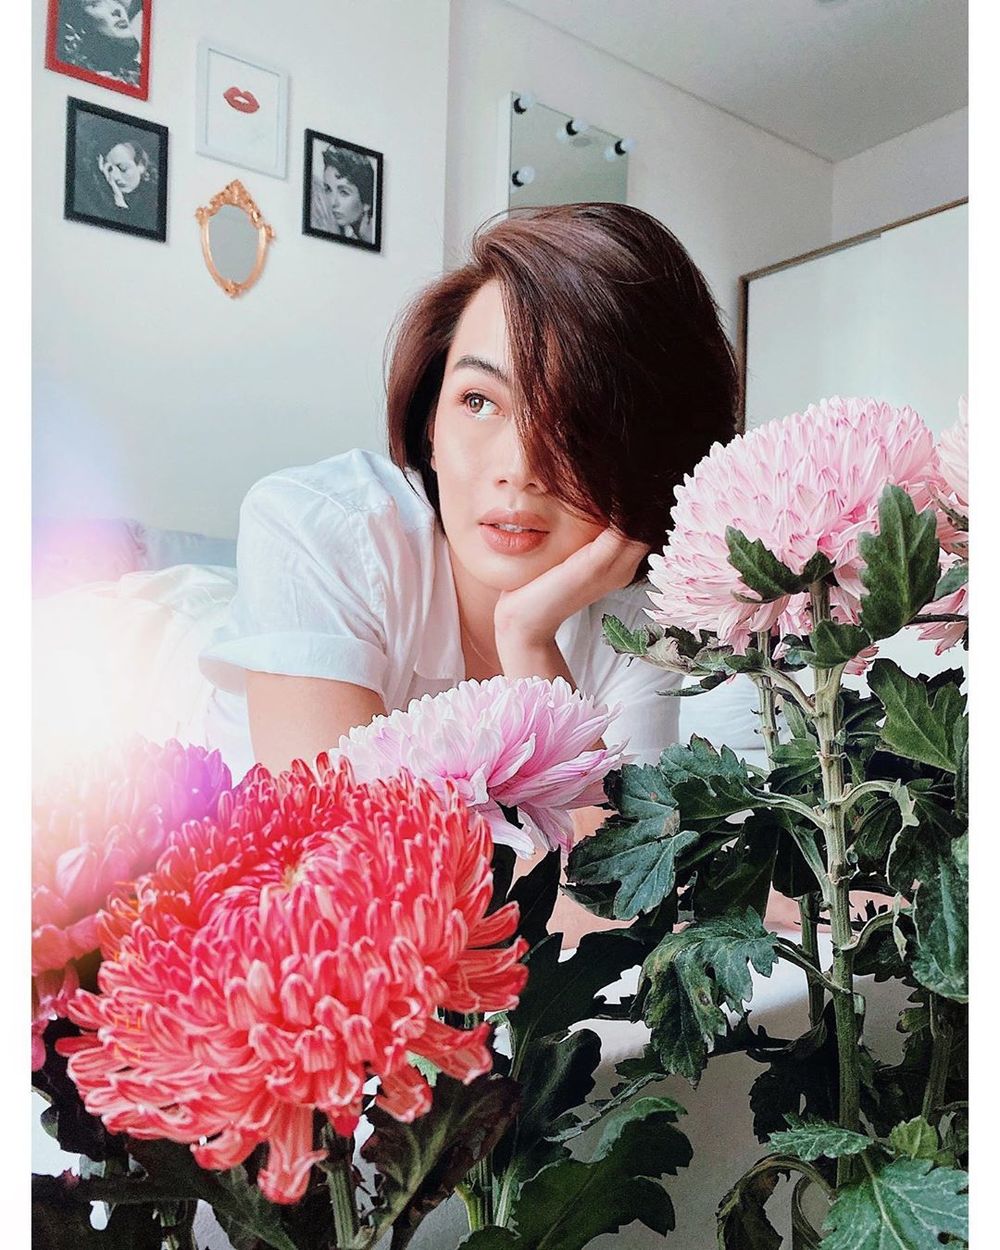  
Đào Bá Lộc nhẹ nhàng, mong manh như thường ngày khi chụp hình cùng hoa. (Ảnh: Instagram nhân vật)